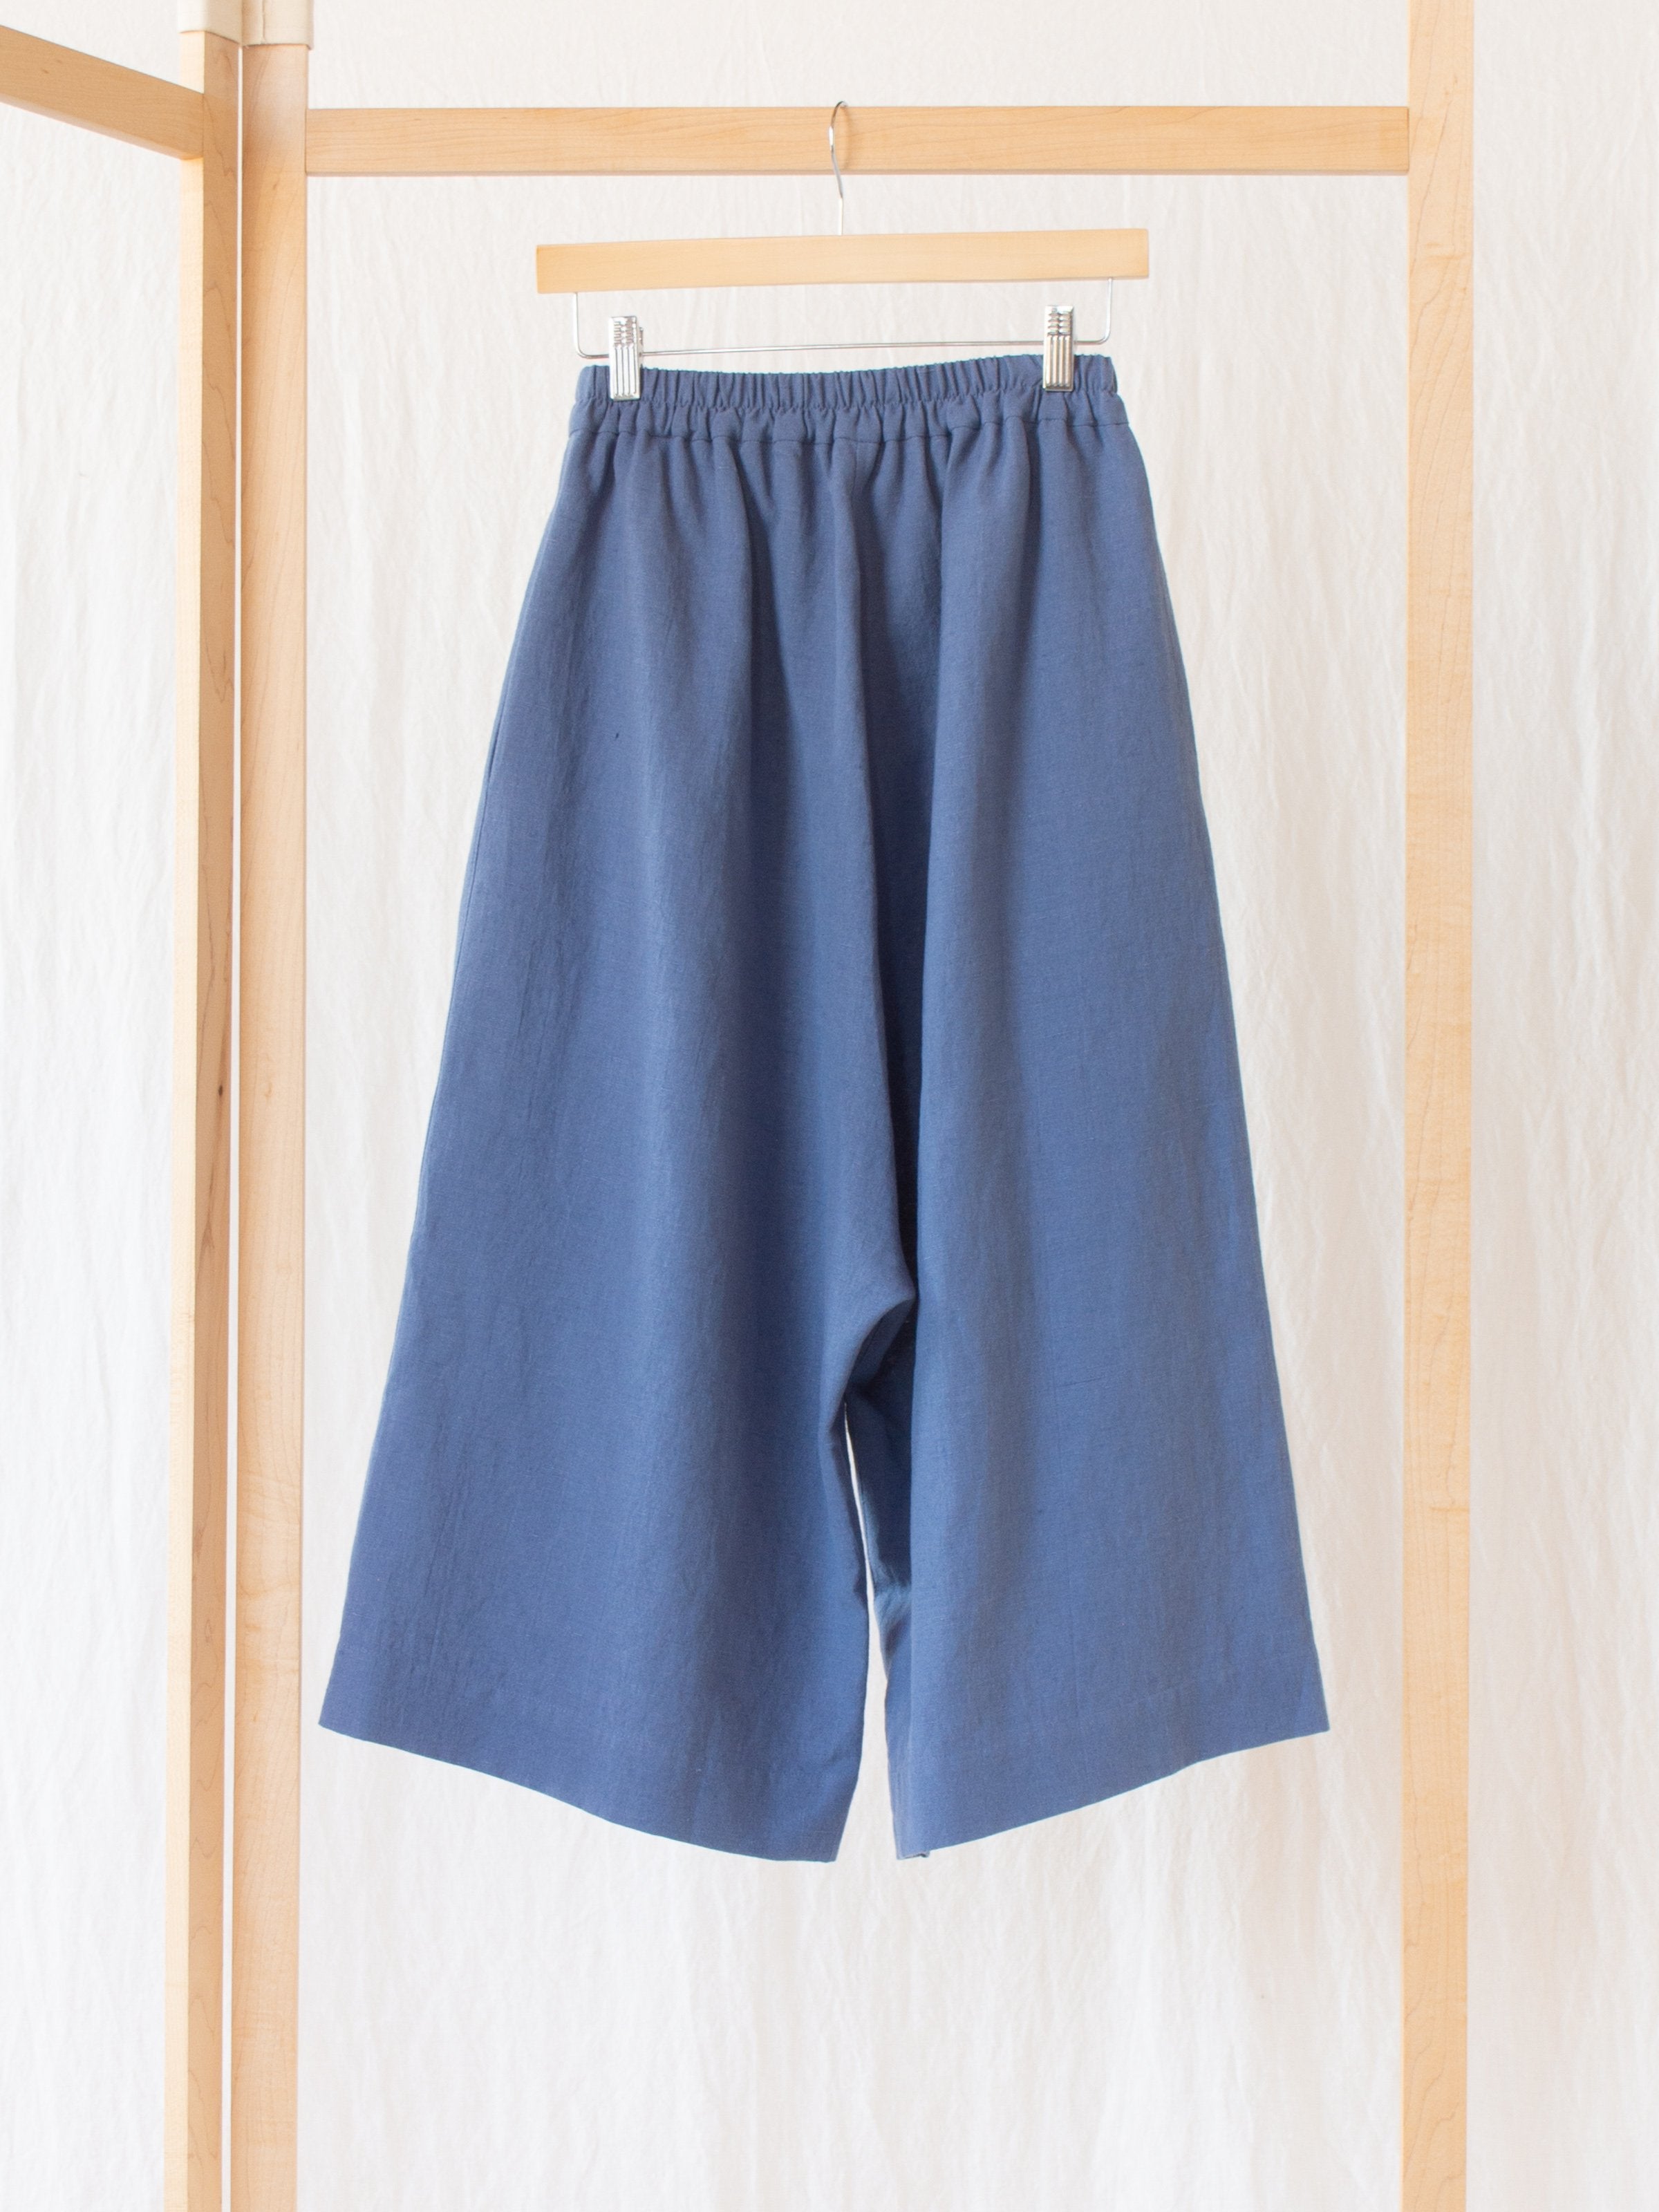 Namu Shop - muku Li / Co Wide Leg Pants - Pale Indigo